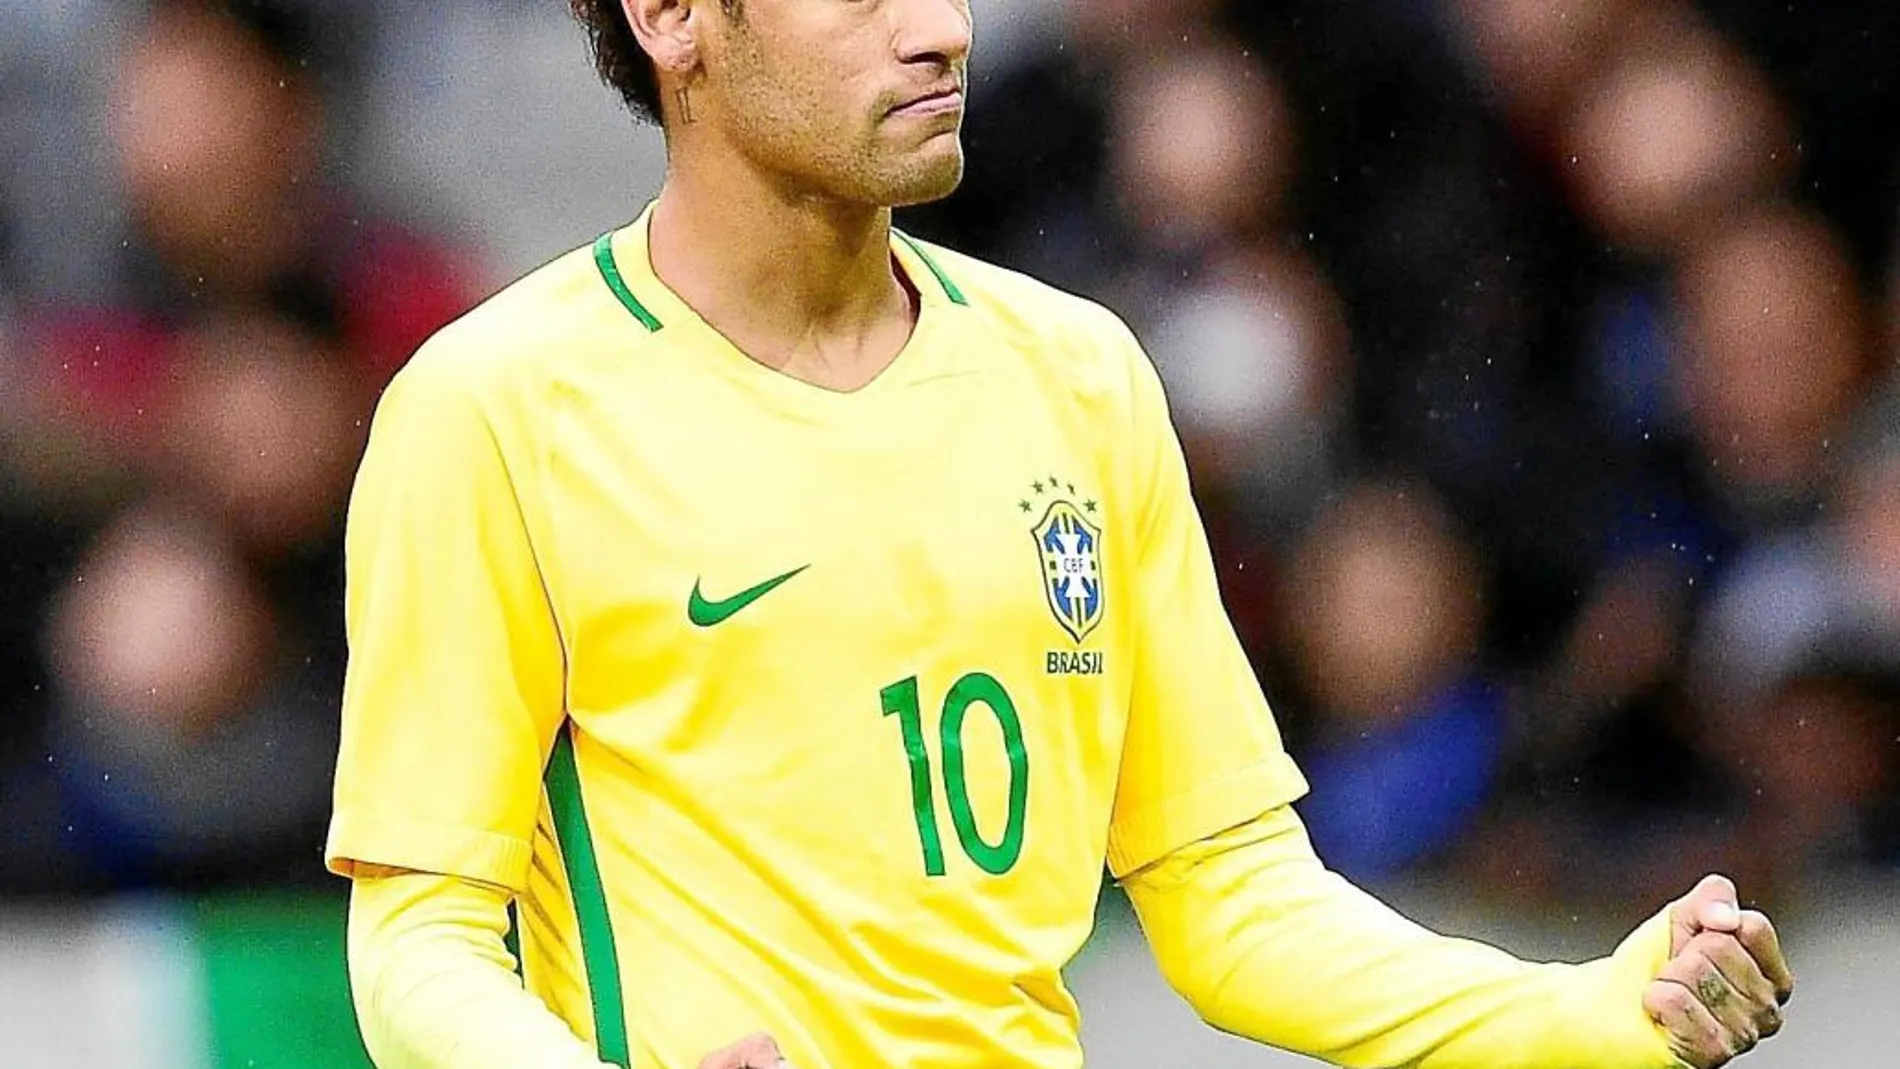 Cara a cara: ¿El fichaje de Neymar por el Madrid haría daño al Barça?